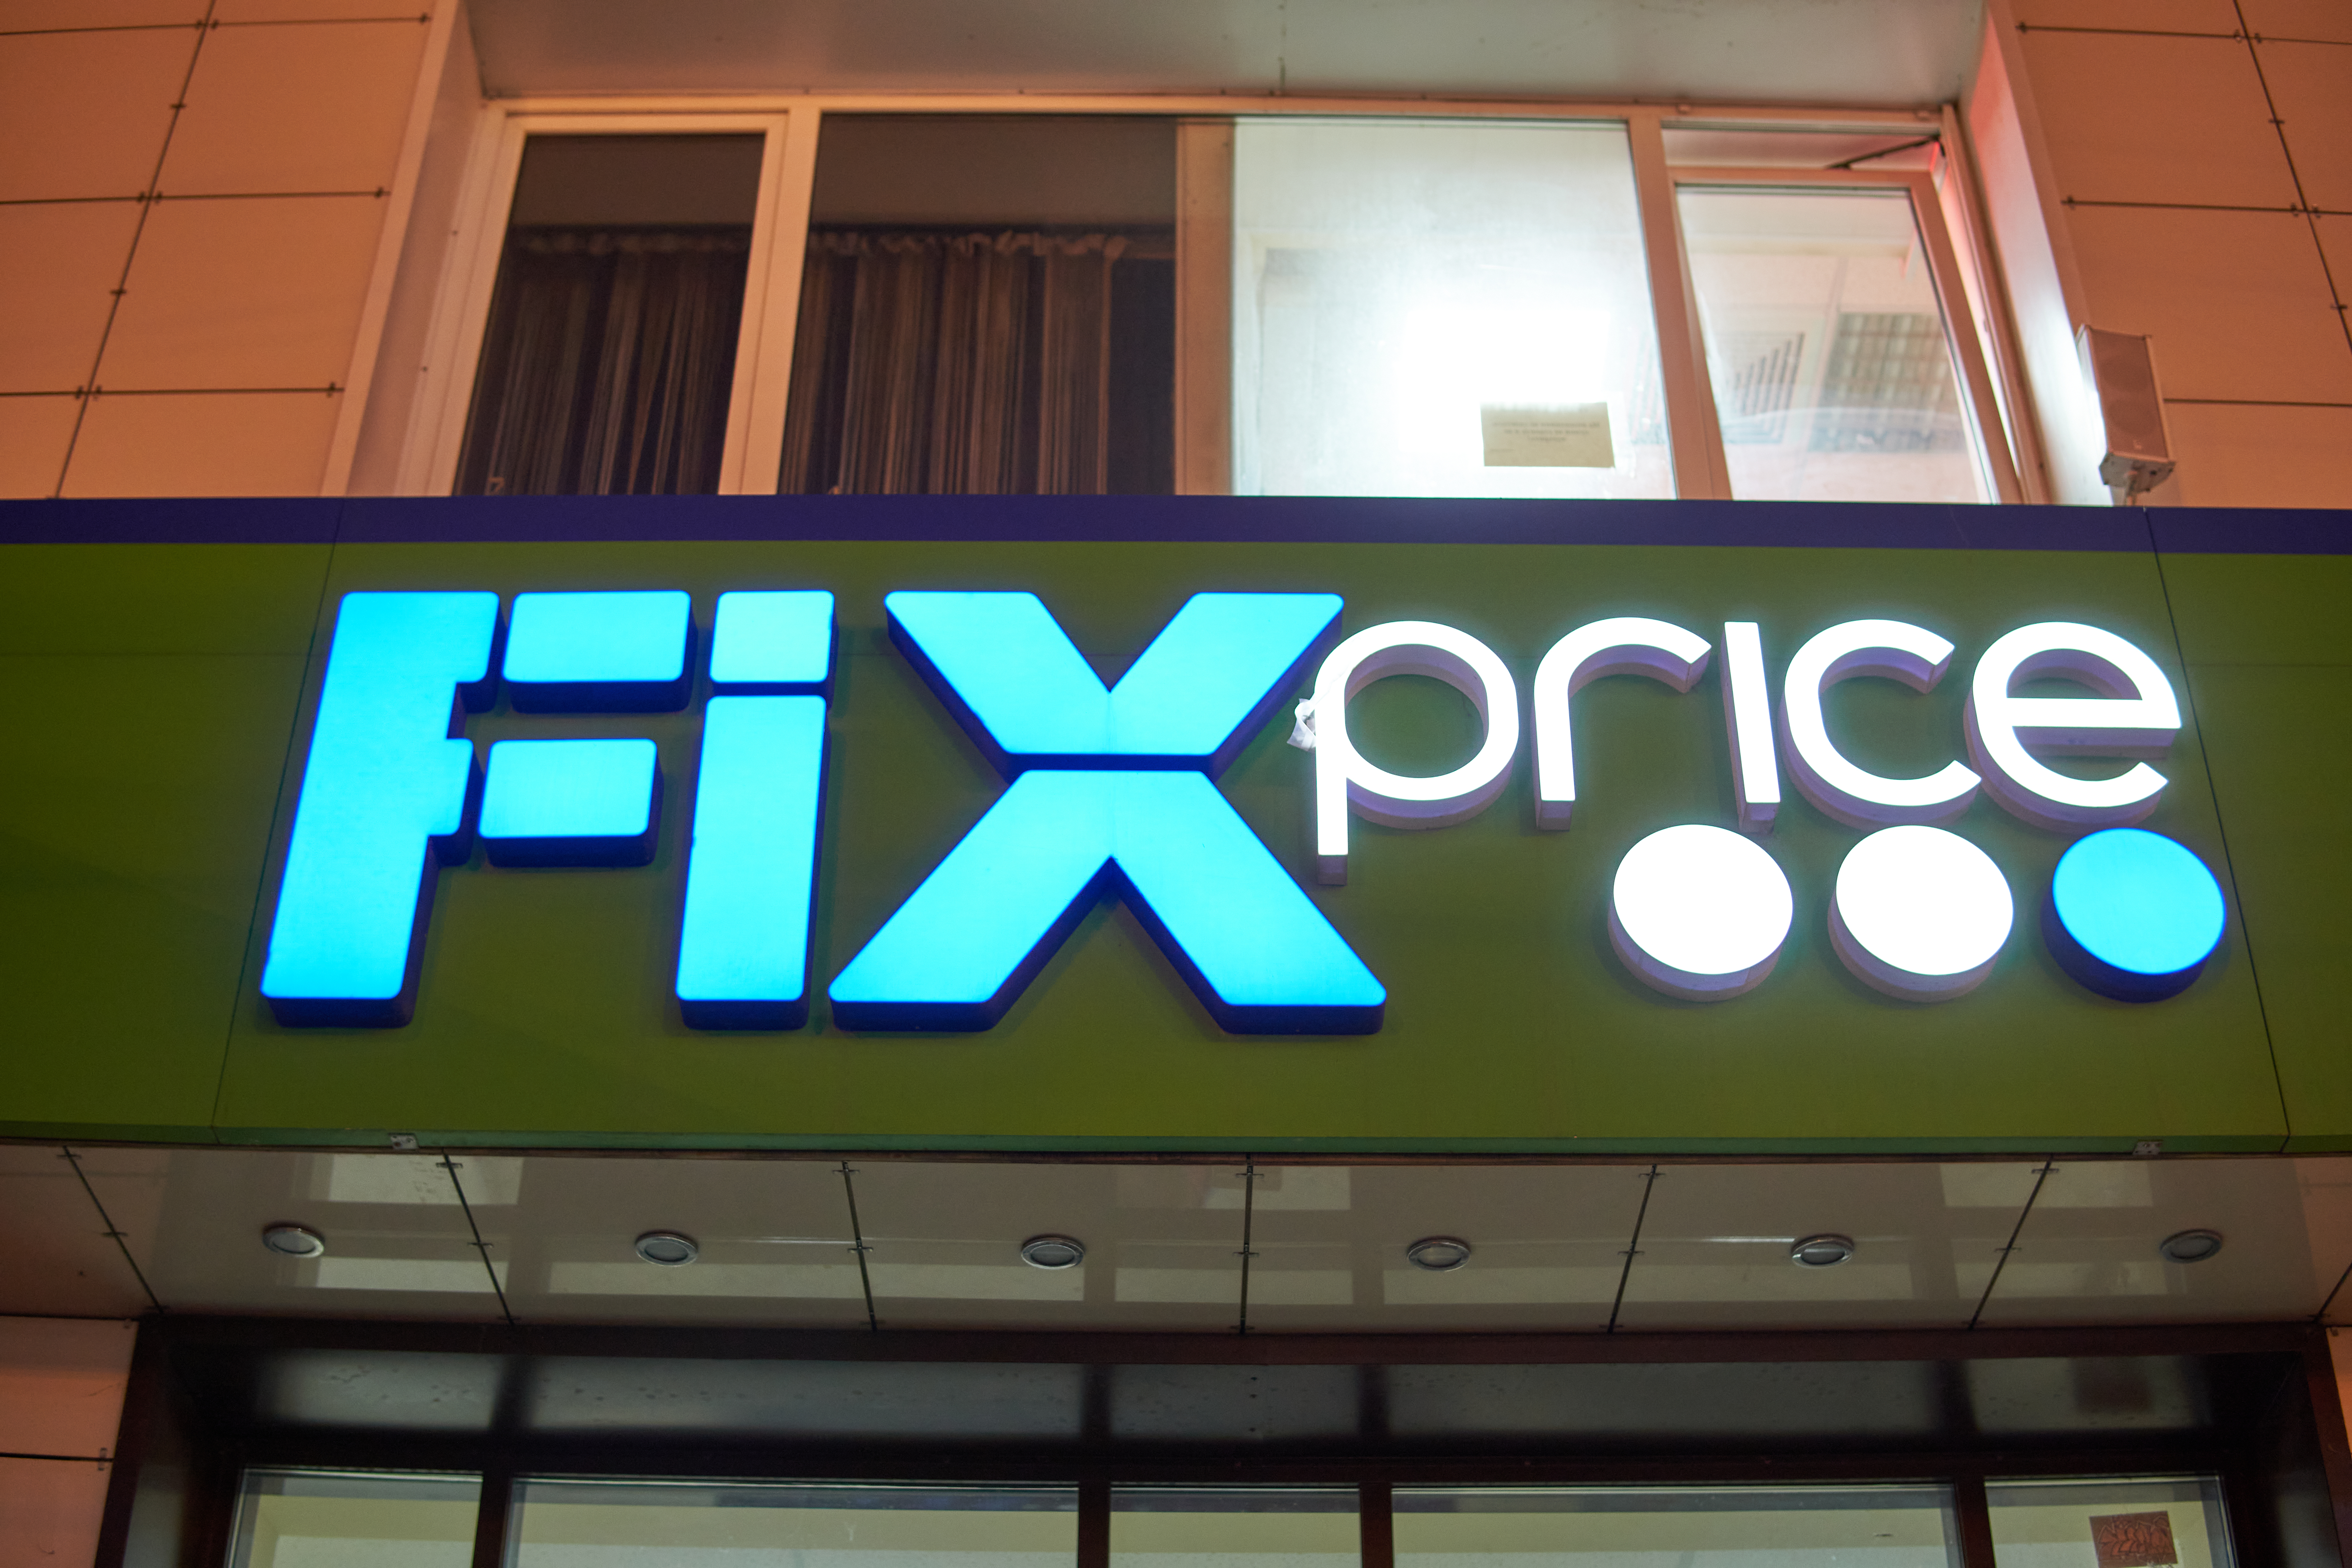 Fix Price определилась со стоимостью акций для IPO и сможет привлечь до $1,7 млрд